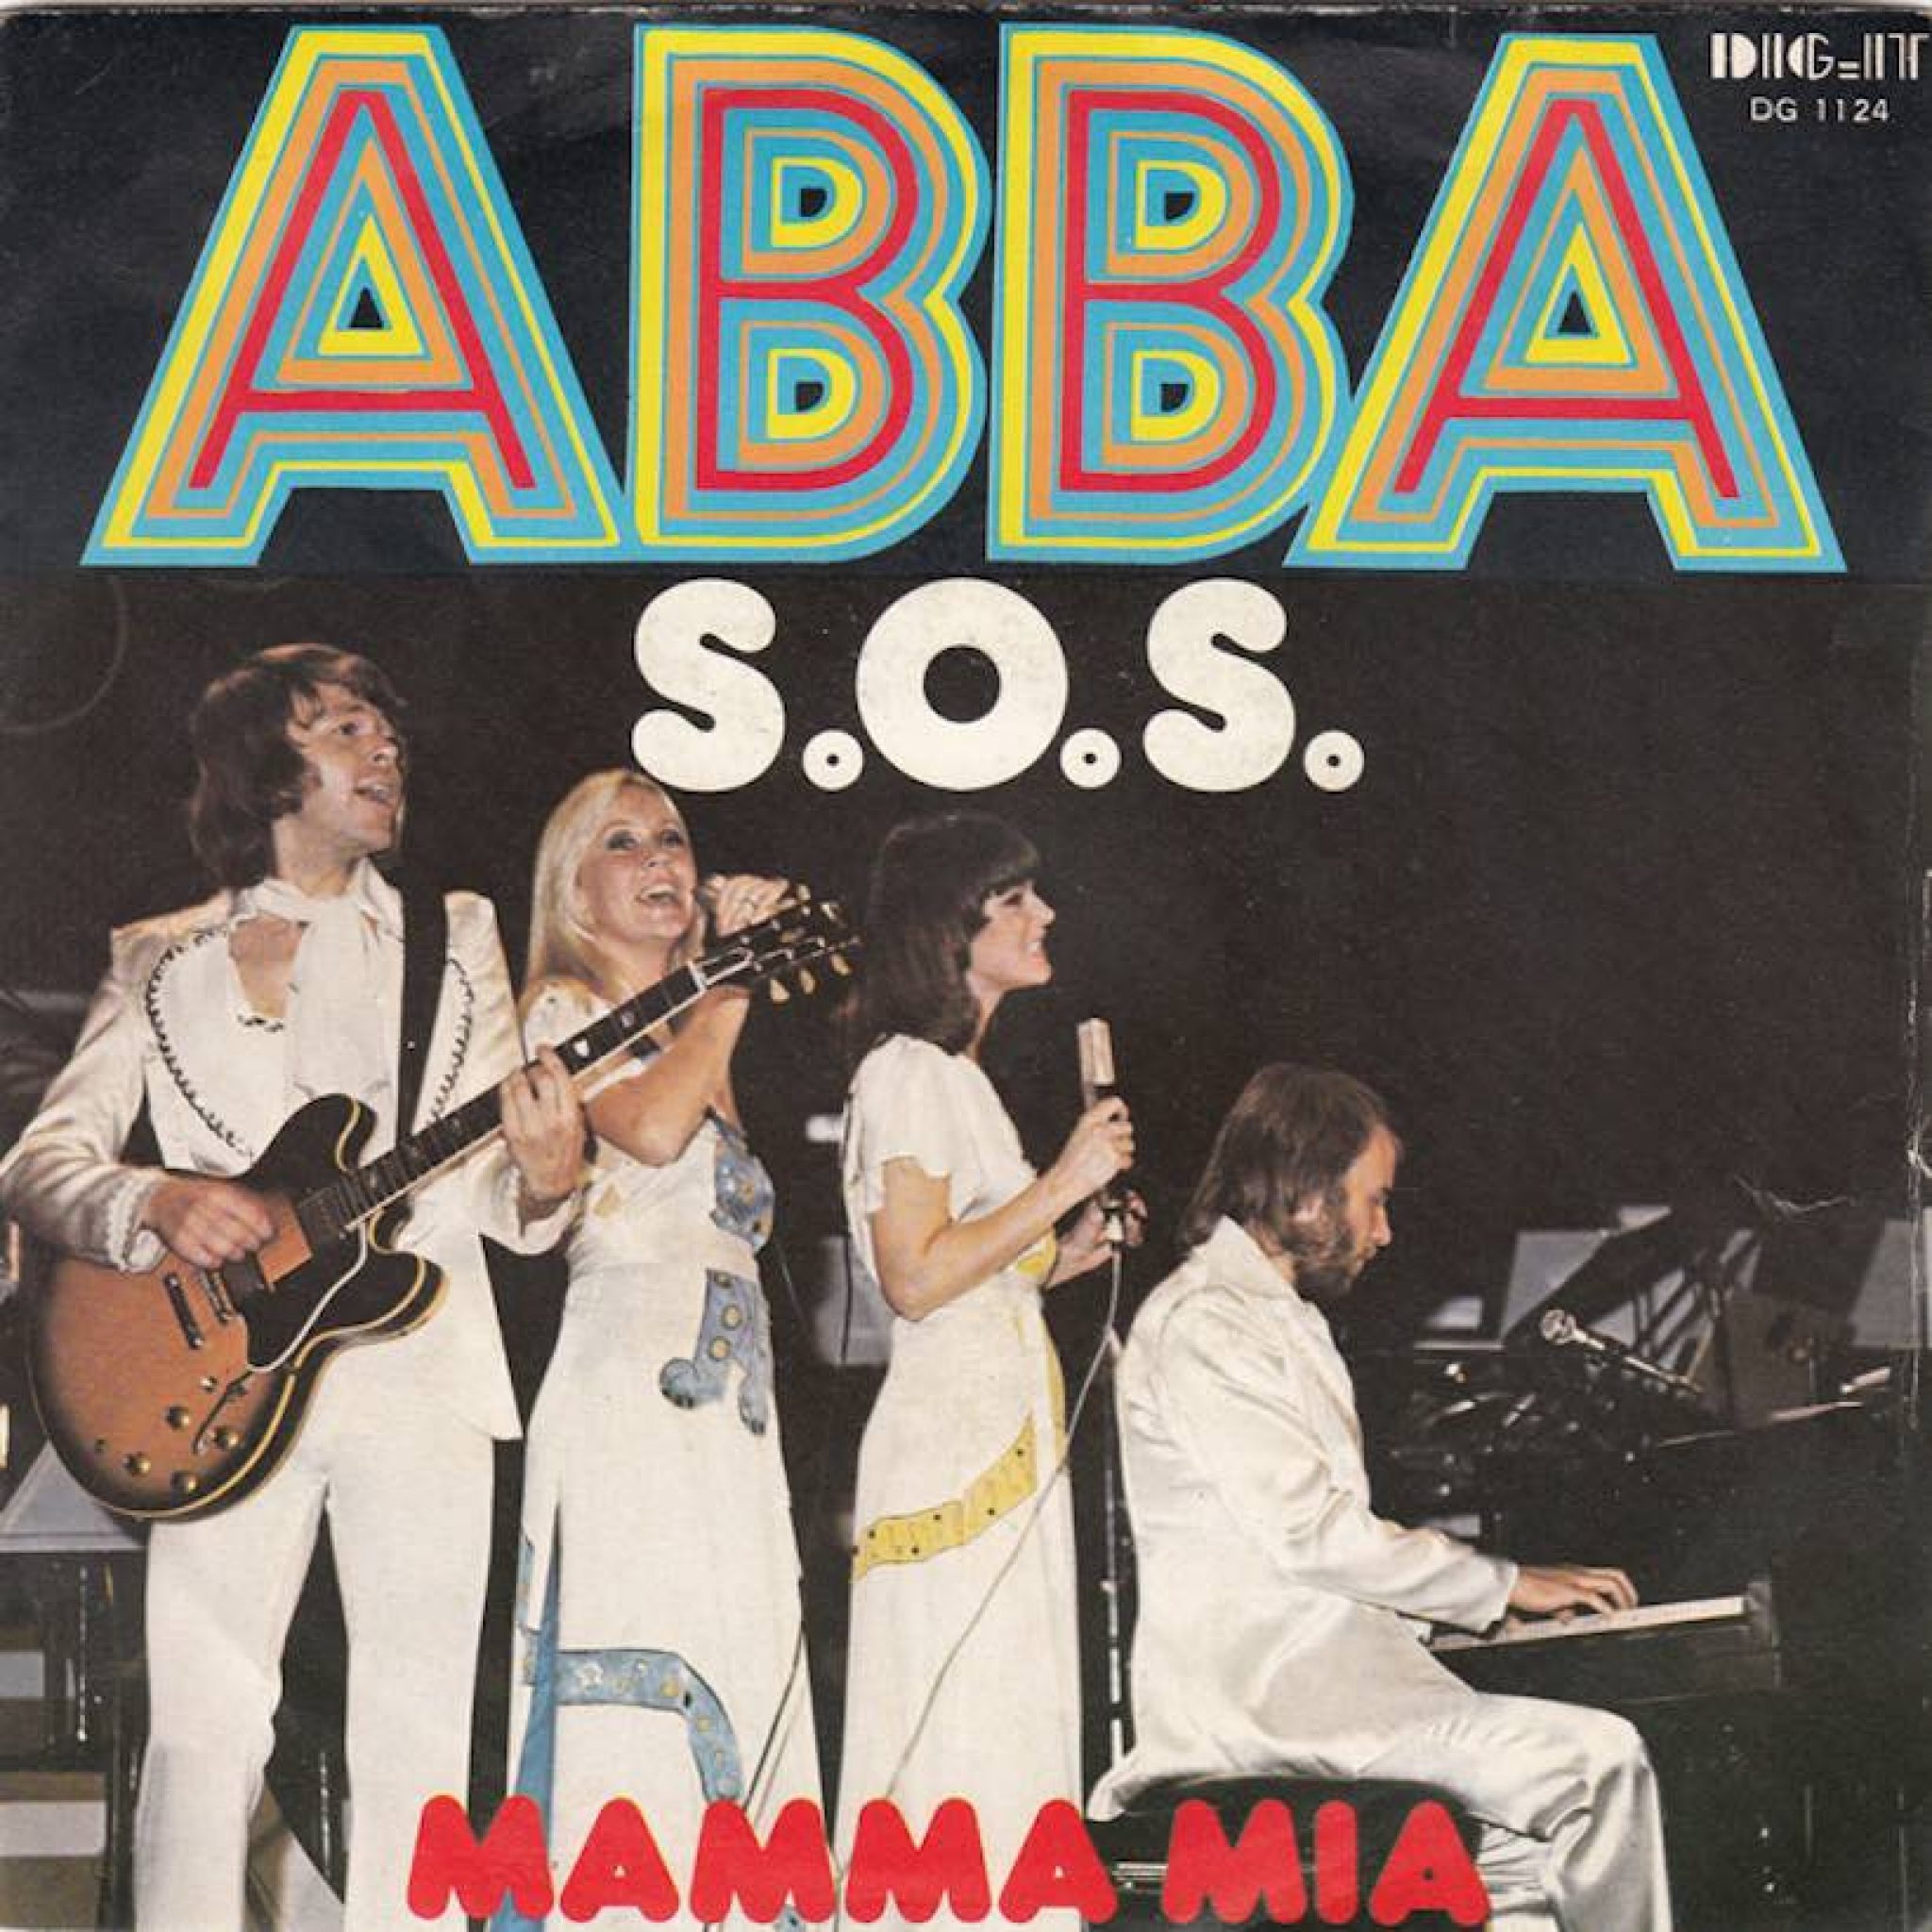 Абба сос. ABBA CD 1975. ABBA - S.O.S. (1975). ABBA SOS 1975. Абба обложка 1975.